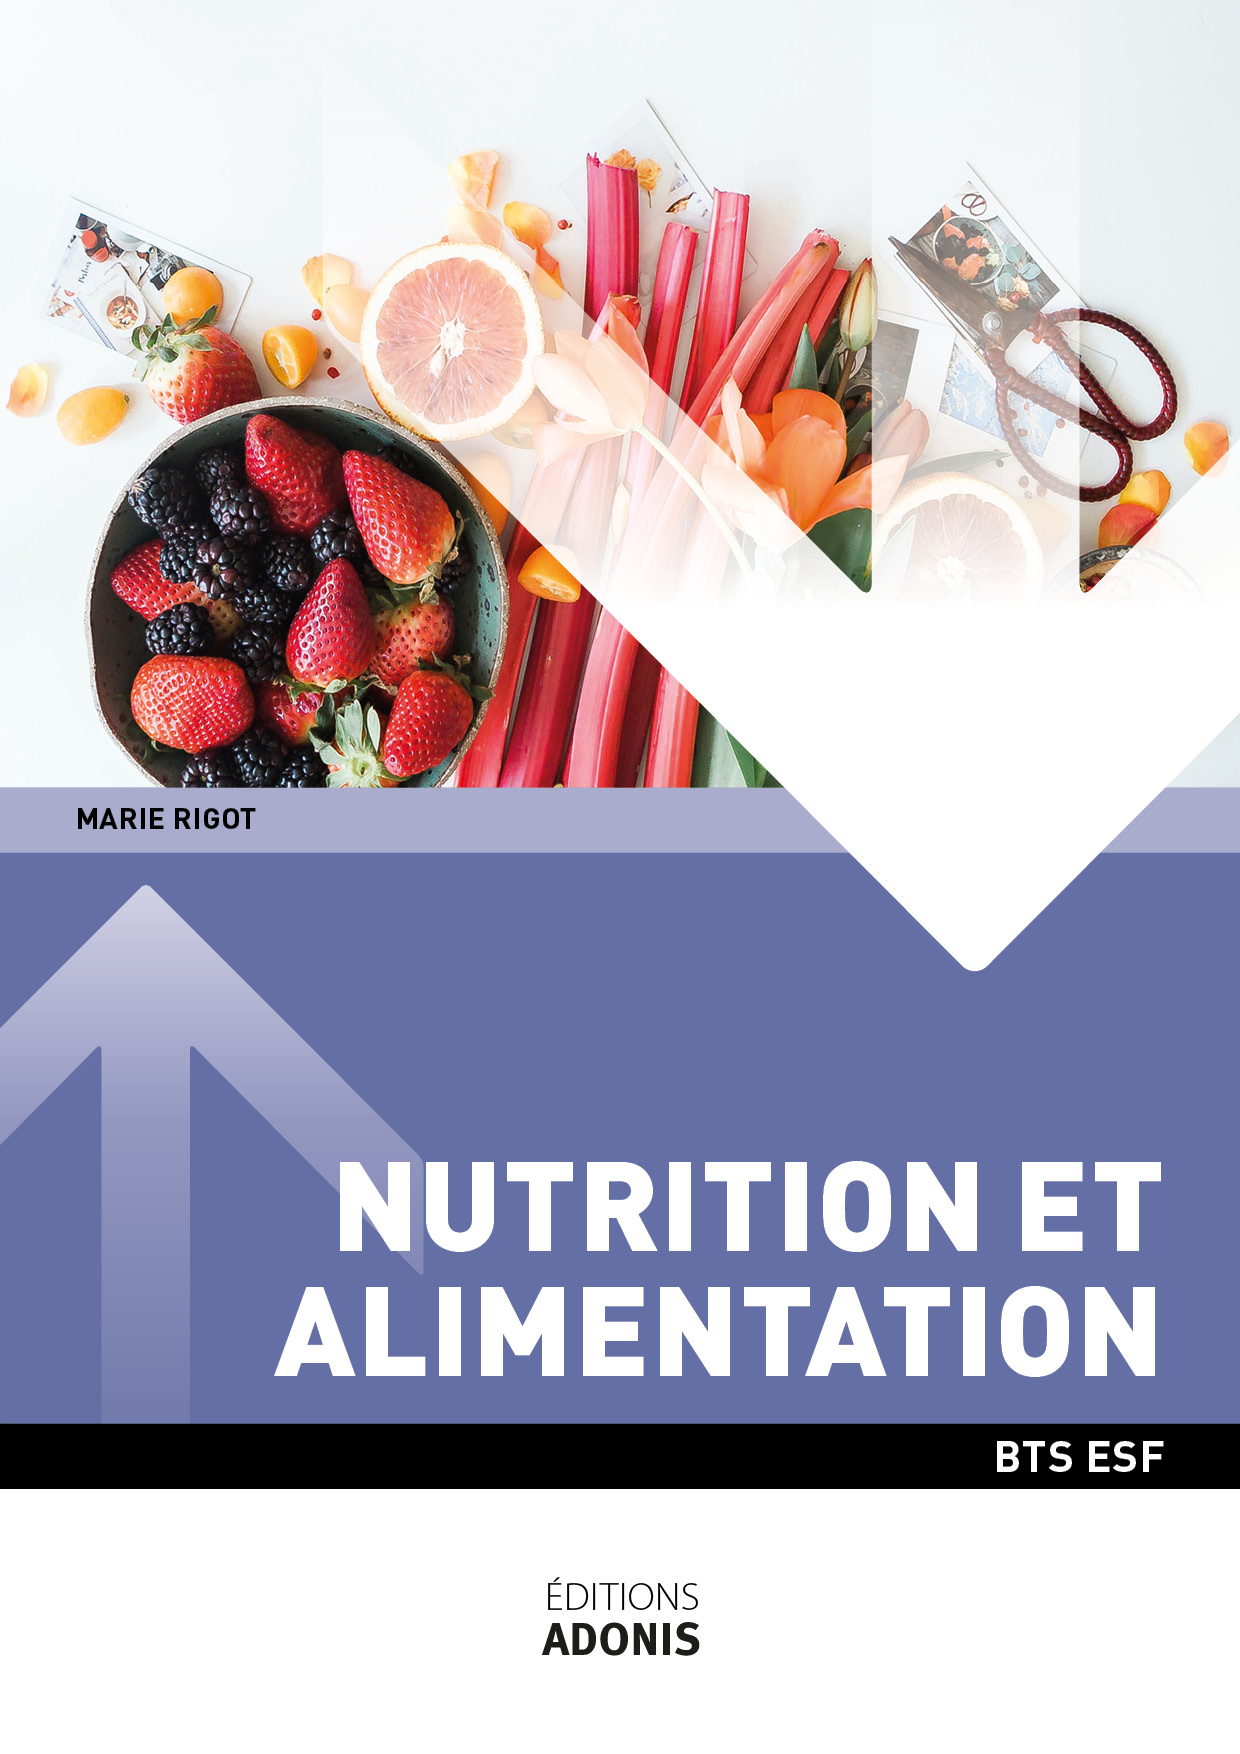 BTS ESF - Nutrition Alimentation (2ème année)